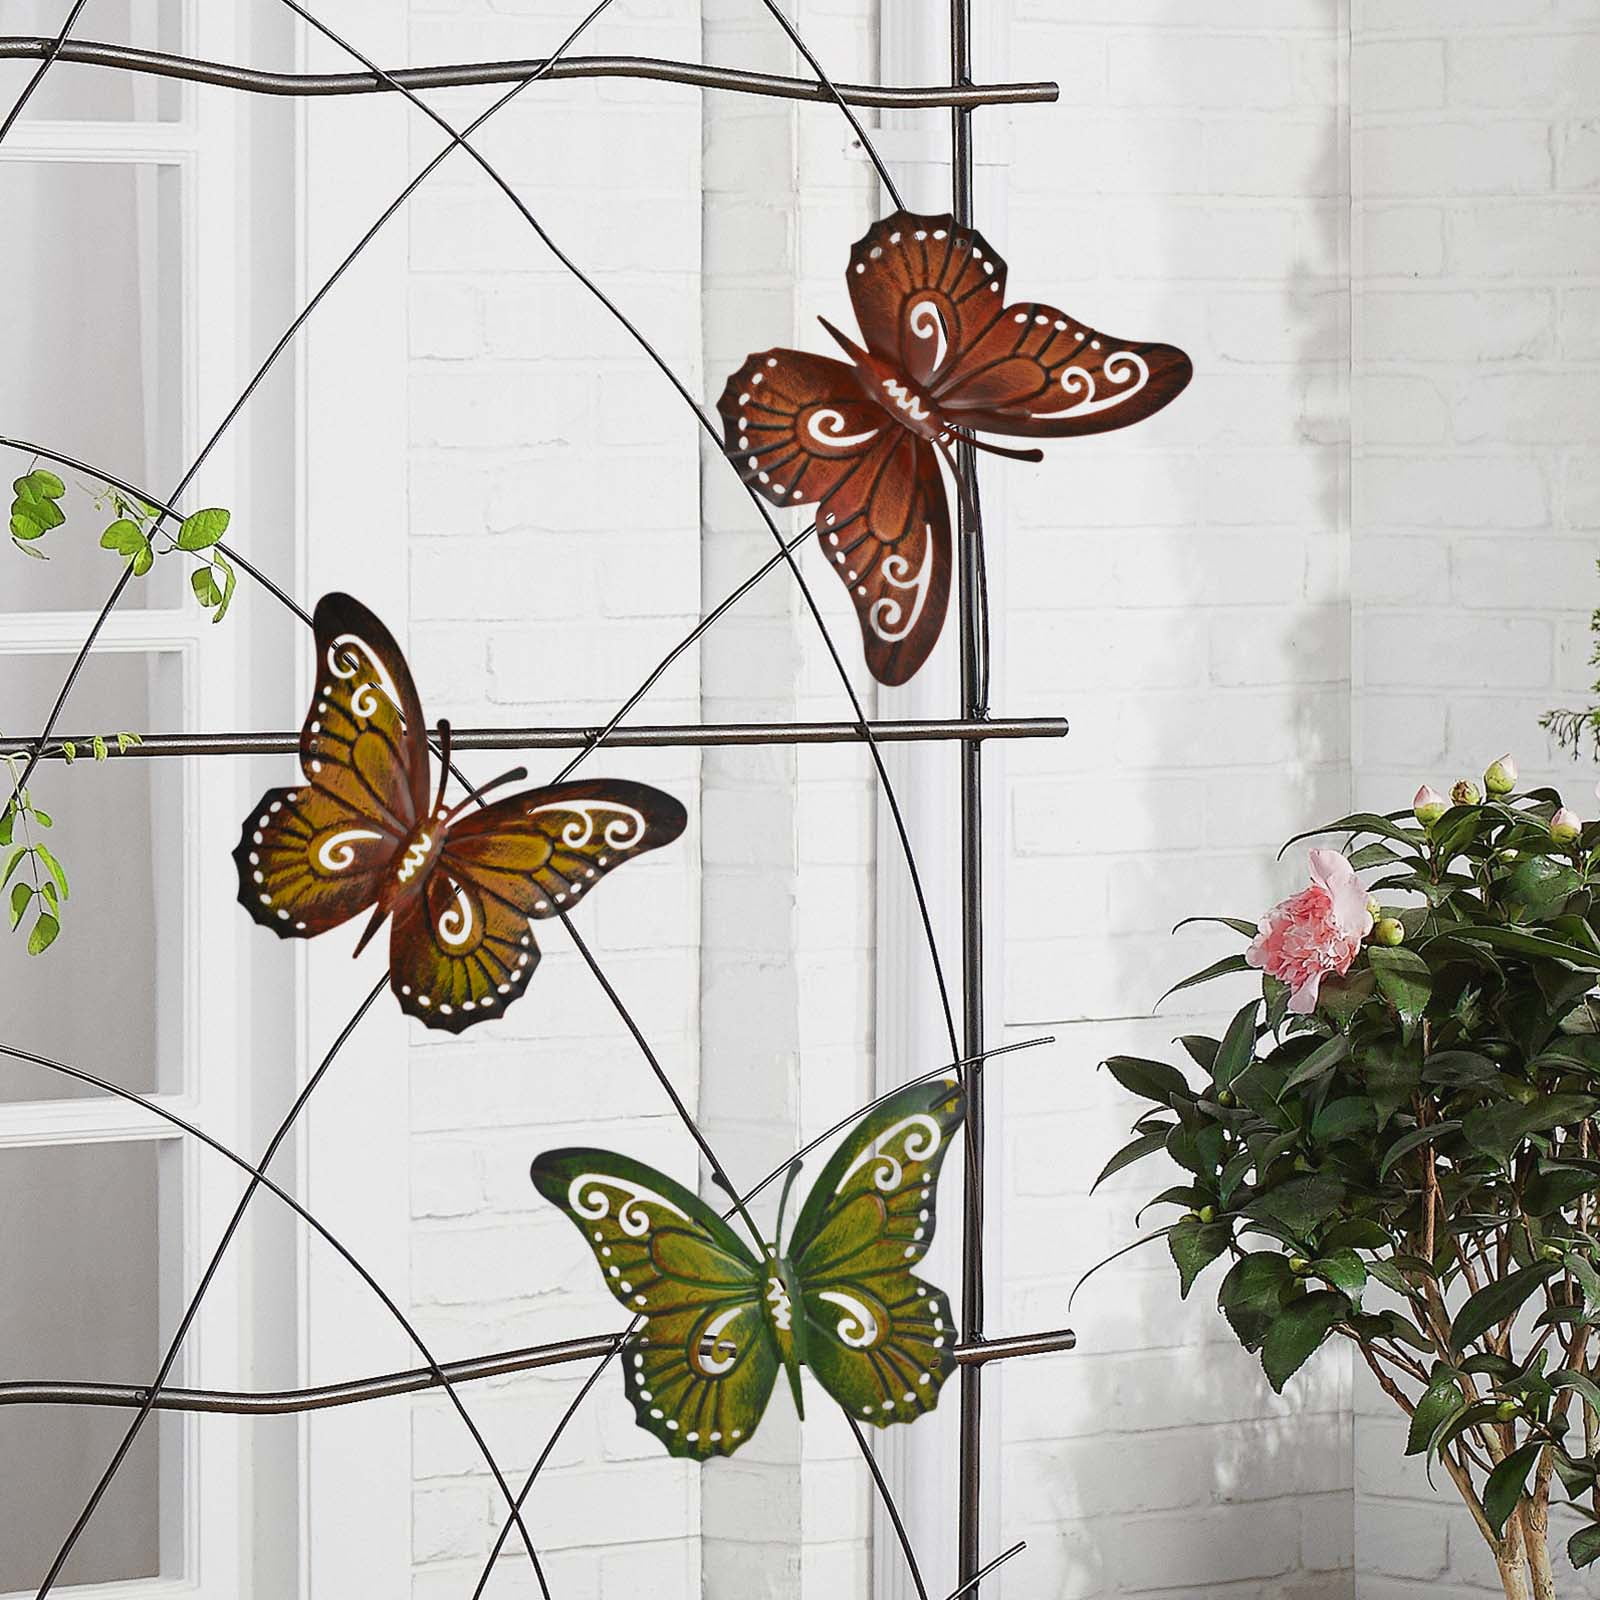 Set of 4 Multi-coloured Small Metal Butterflies Garden/Home Wall Art Ornament